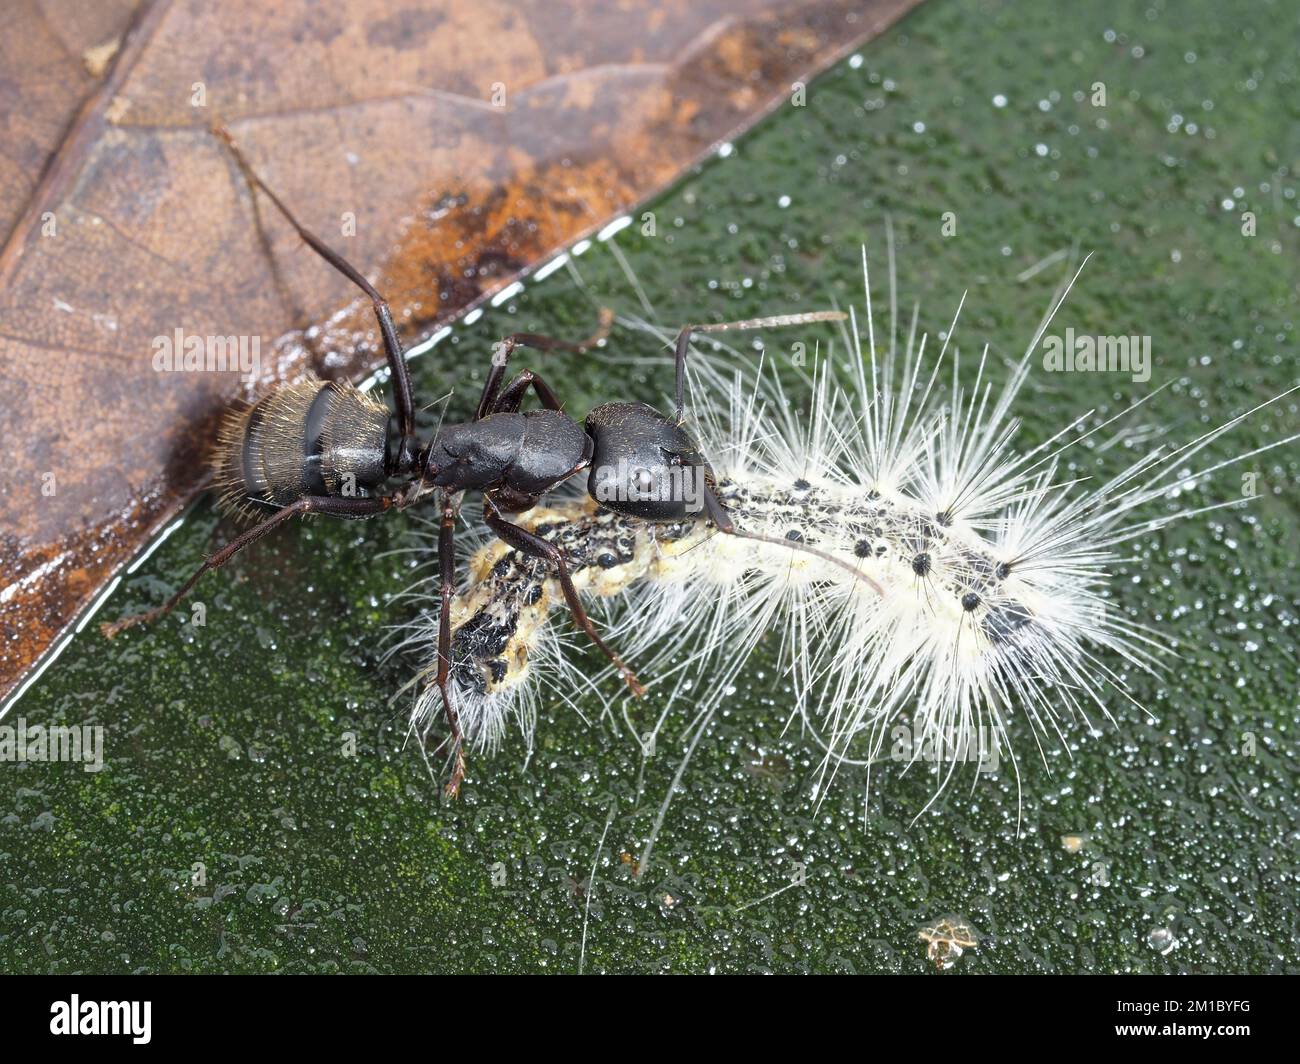 Una formica (identificata come Camponotus pennsylvanicus) contro una specie di bruco, in Texas, Stati Uniti Foto Stock